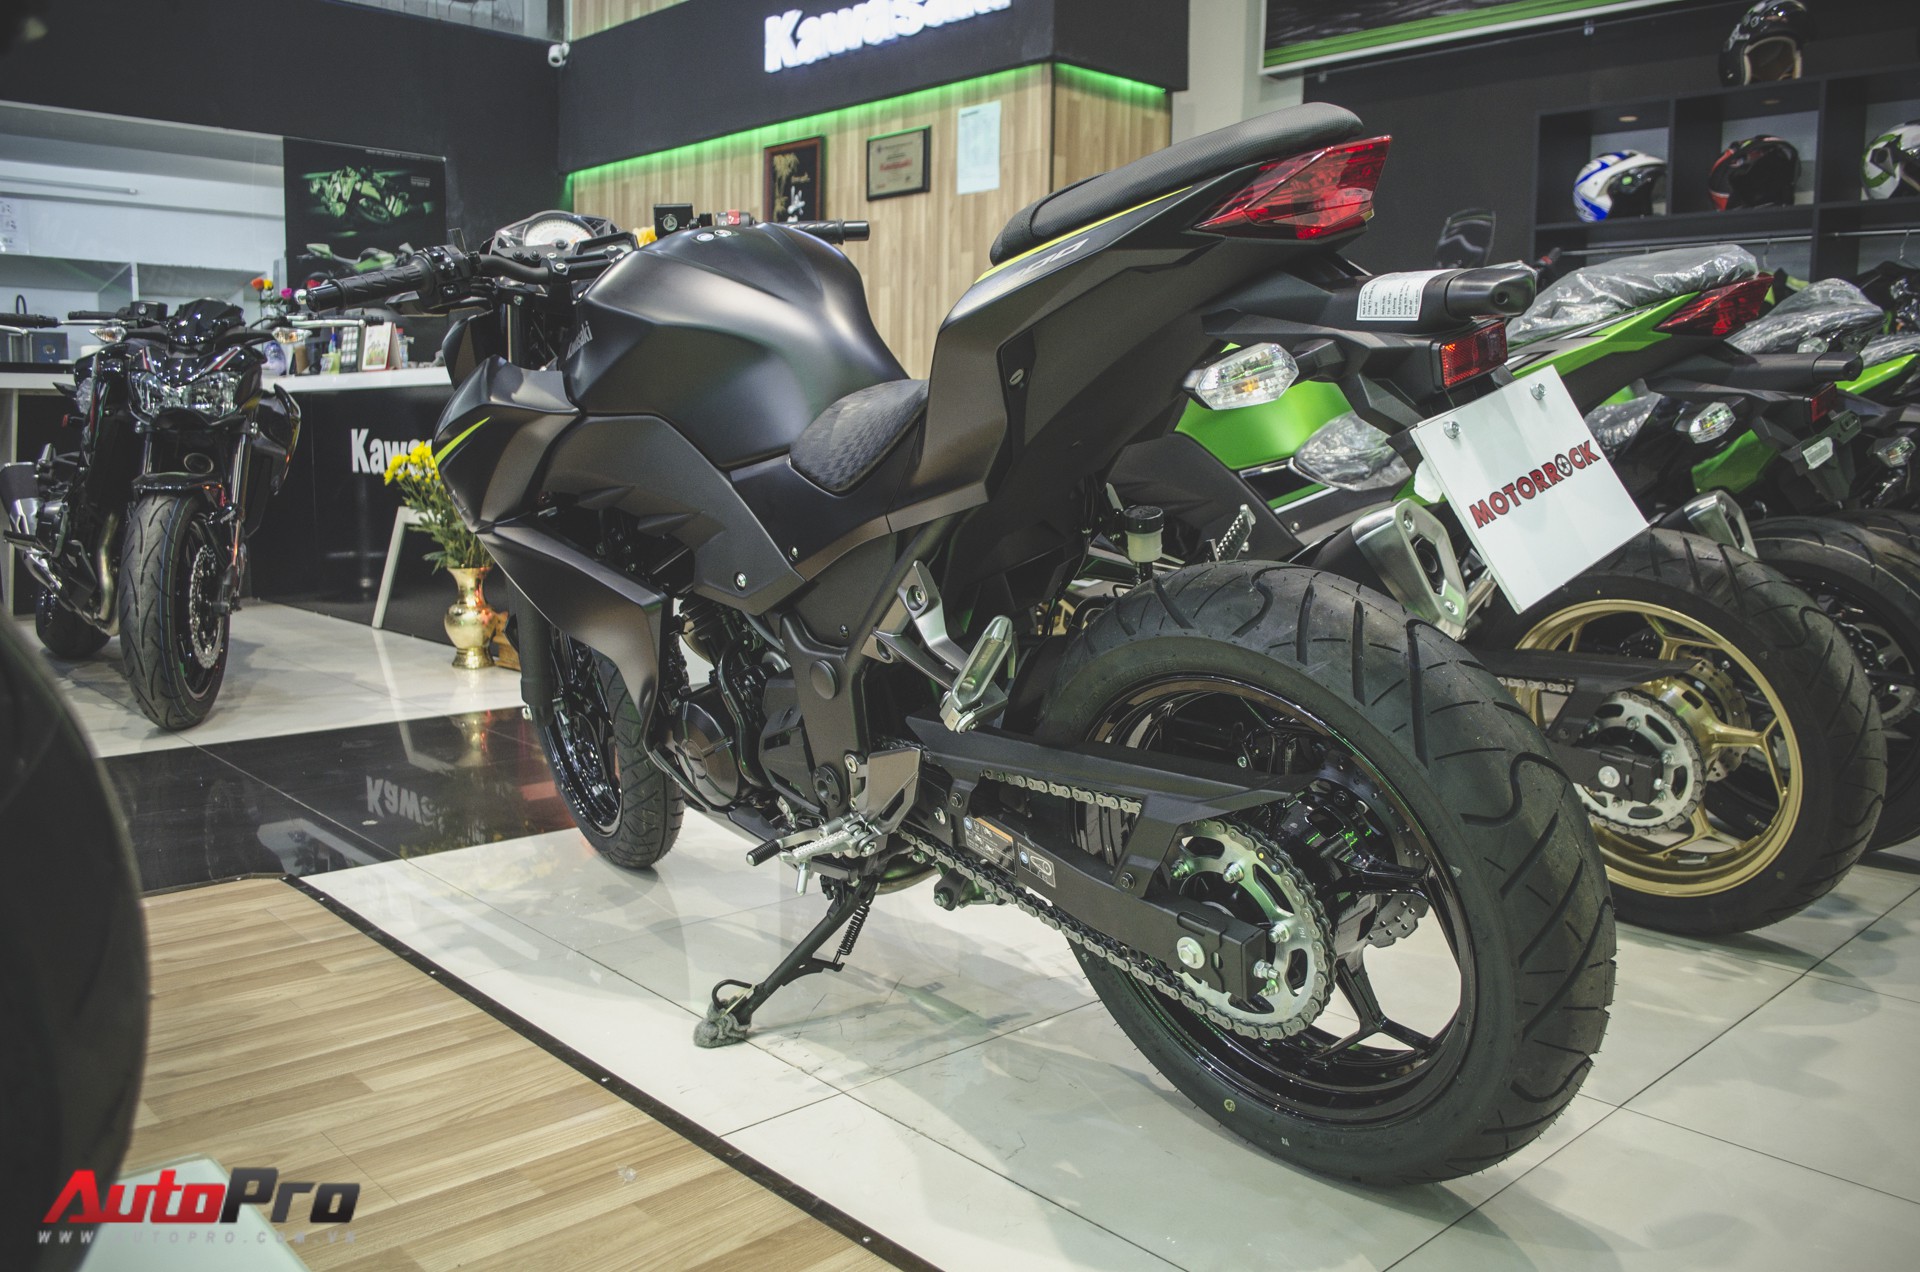 Kawasaki Z300 2018 giá từ 129 triệu đồng - nakedbike 300cc rẻ nhất Việt Nam